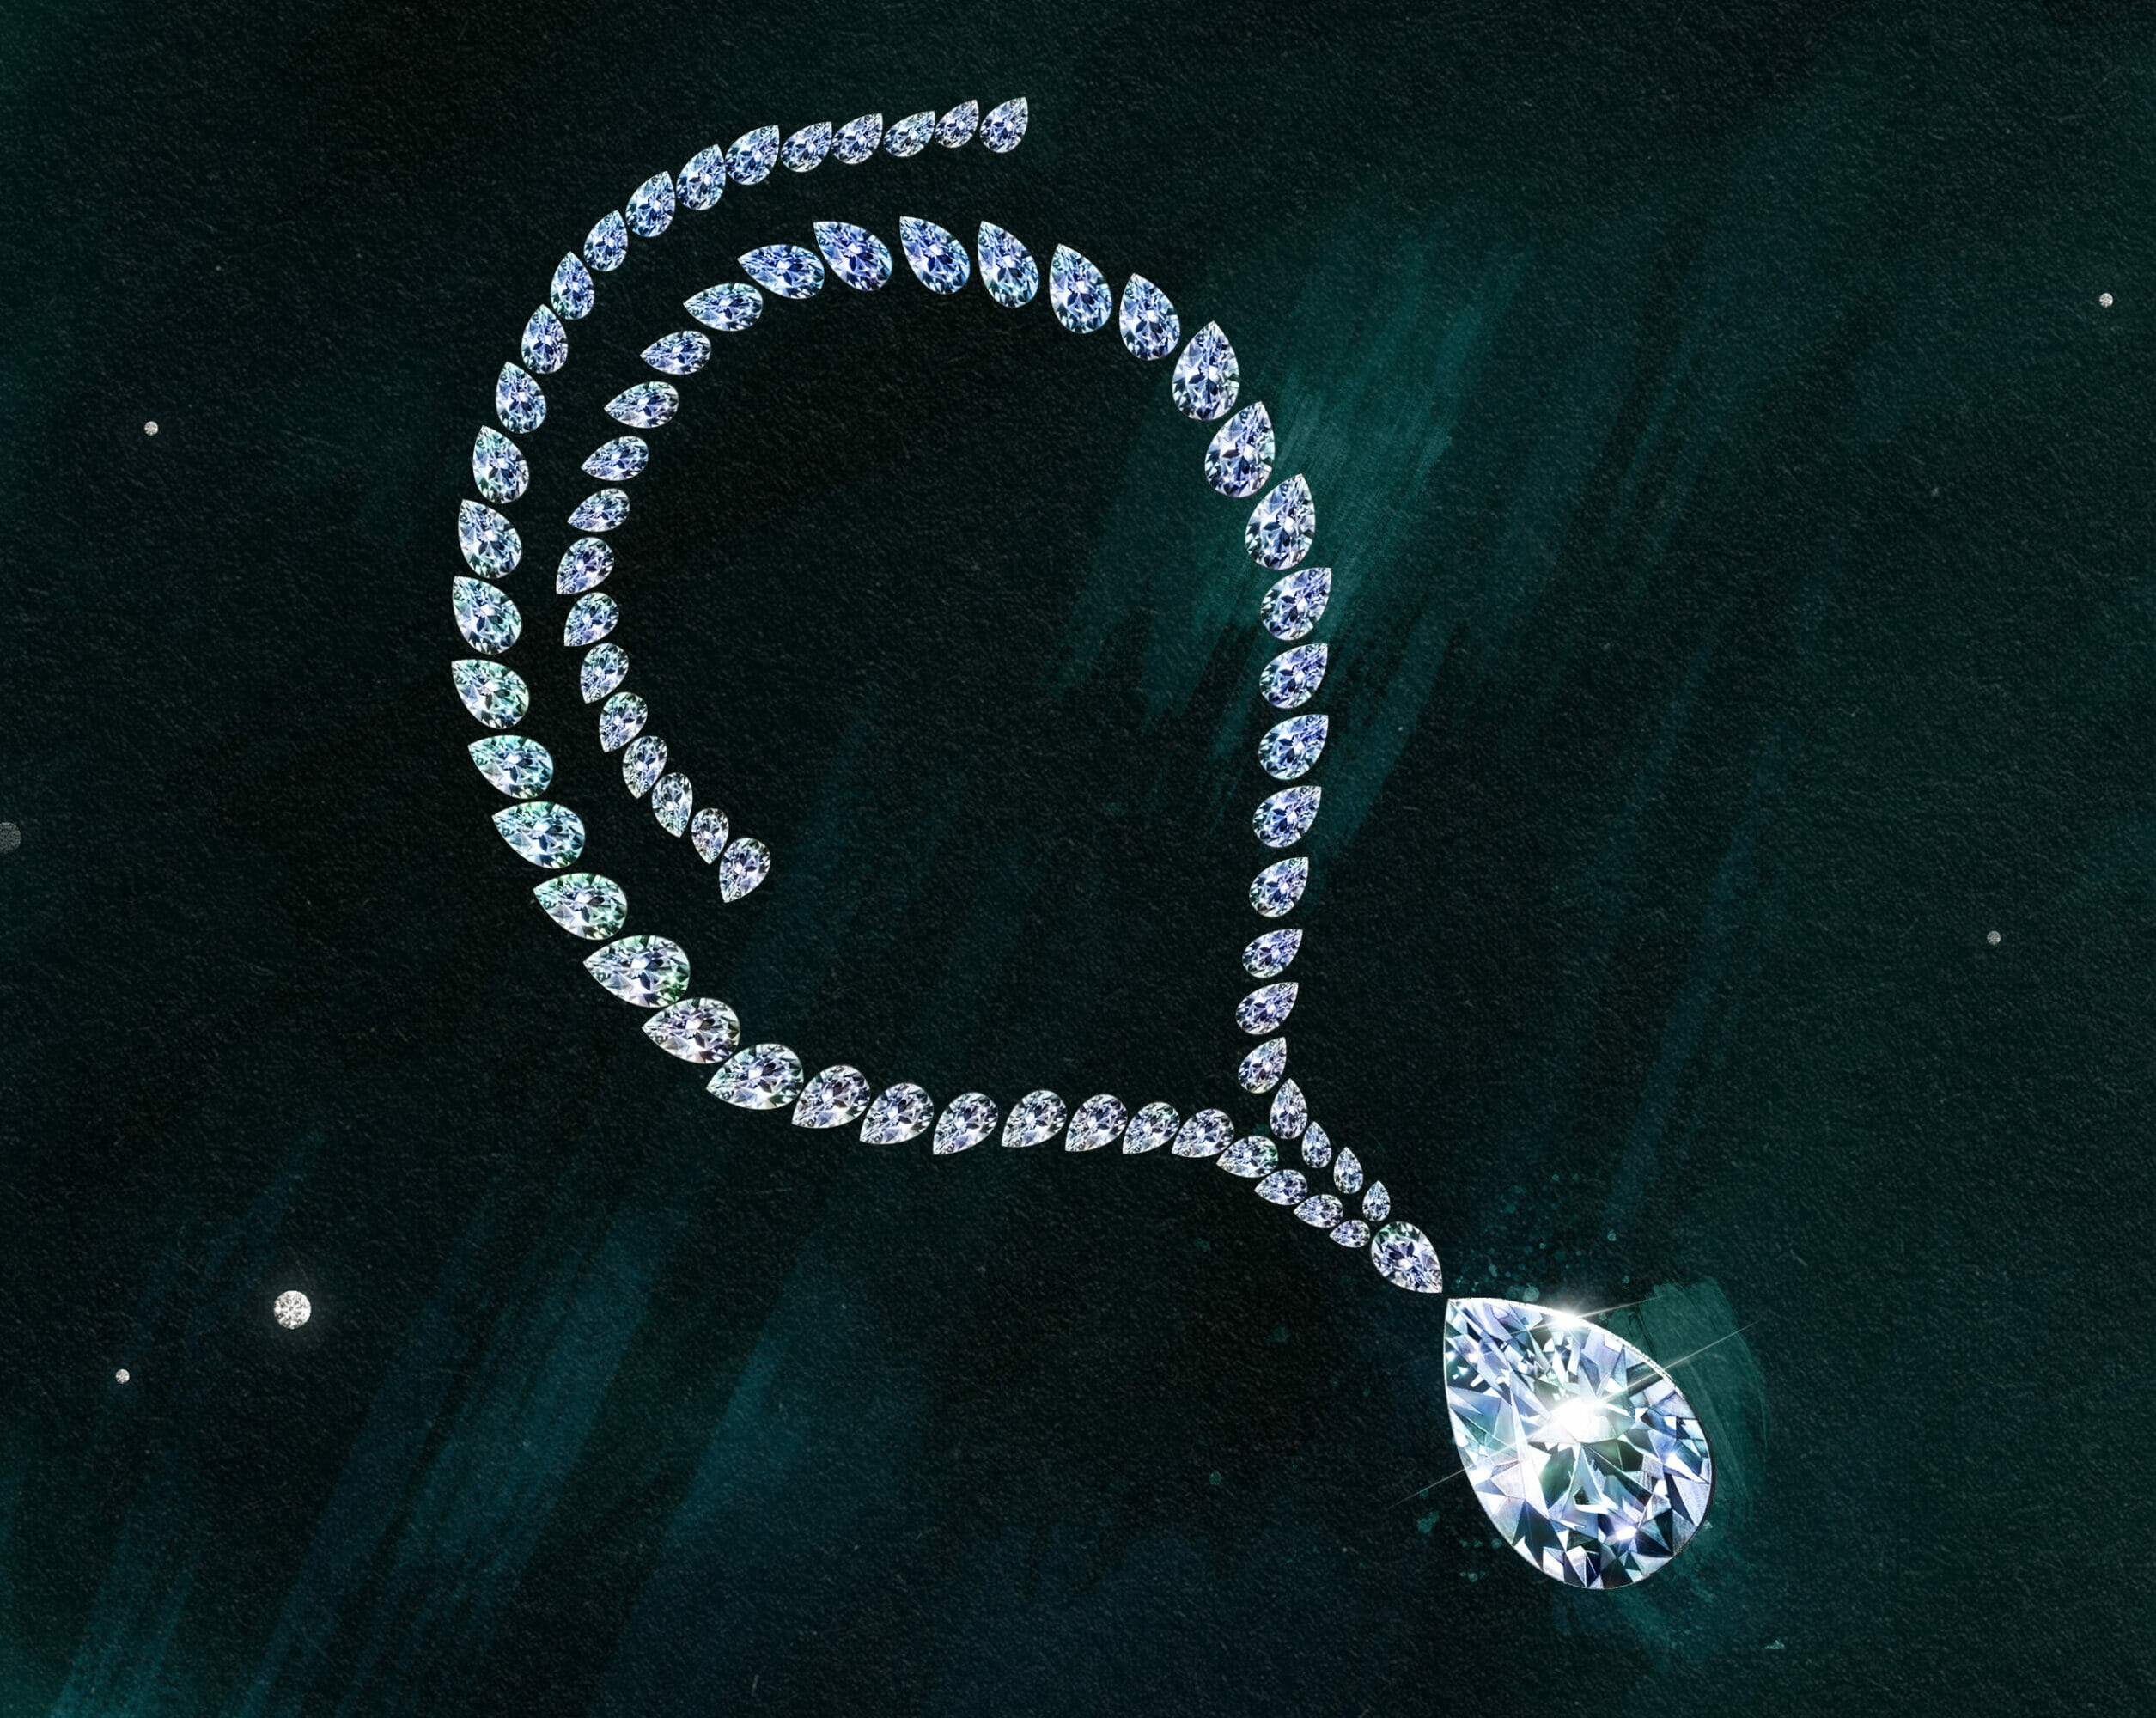 Ambaji Shinde's creation - The 69.42-carat Taylor-Burton diamond 